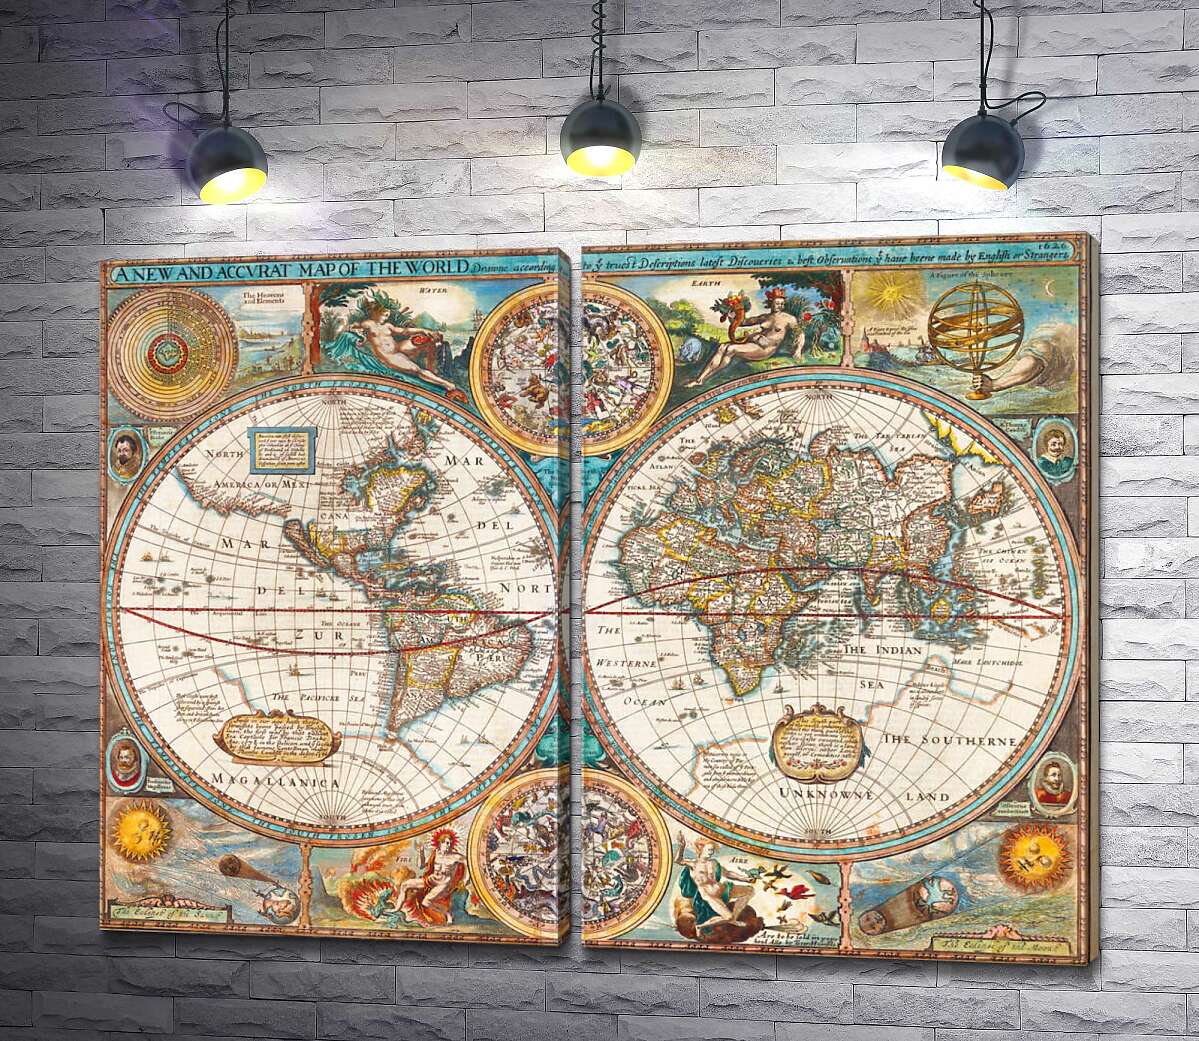 модульная картина Географическая карта "Нового мира" 1627 года, авторства картографа Джона Спида (John Speed)